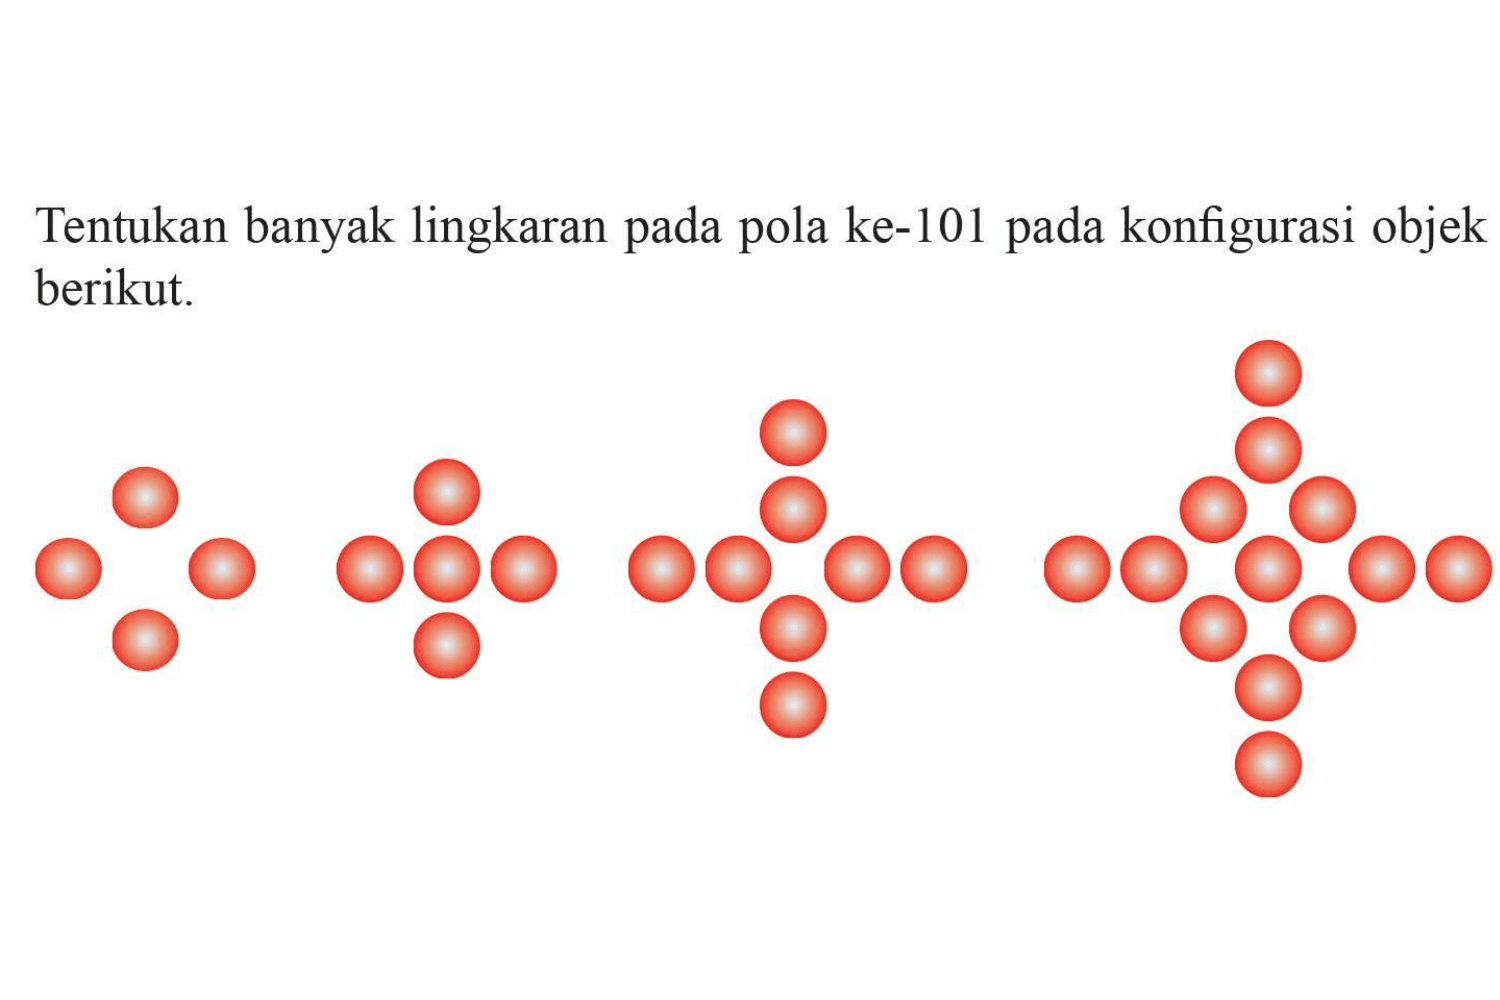 Tentukan banyak lingkaran pada pola ke-101 pada konfigurasi objek berikut.